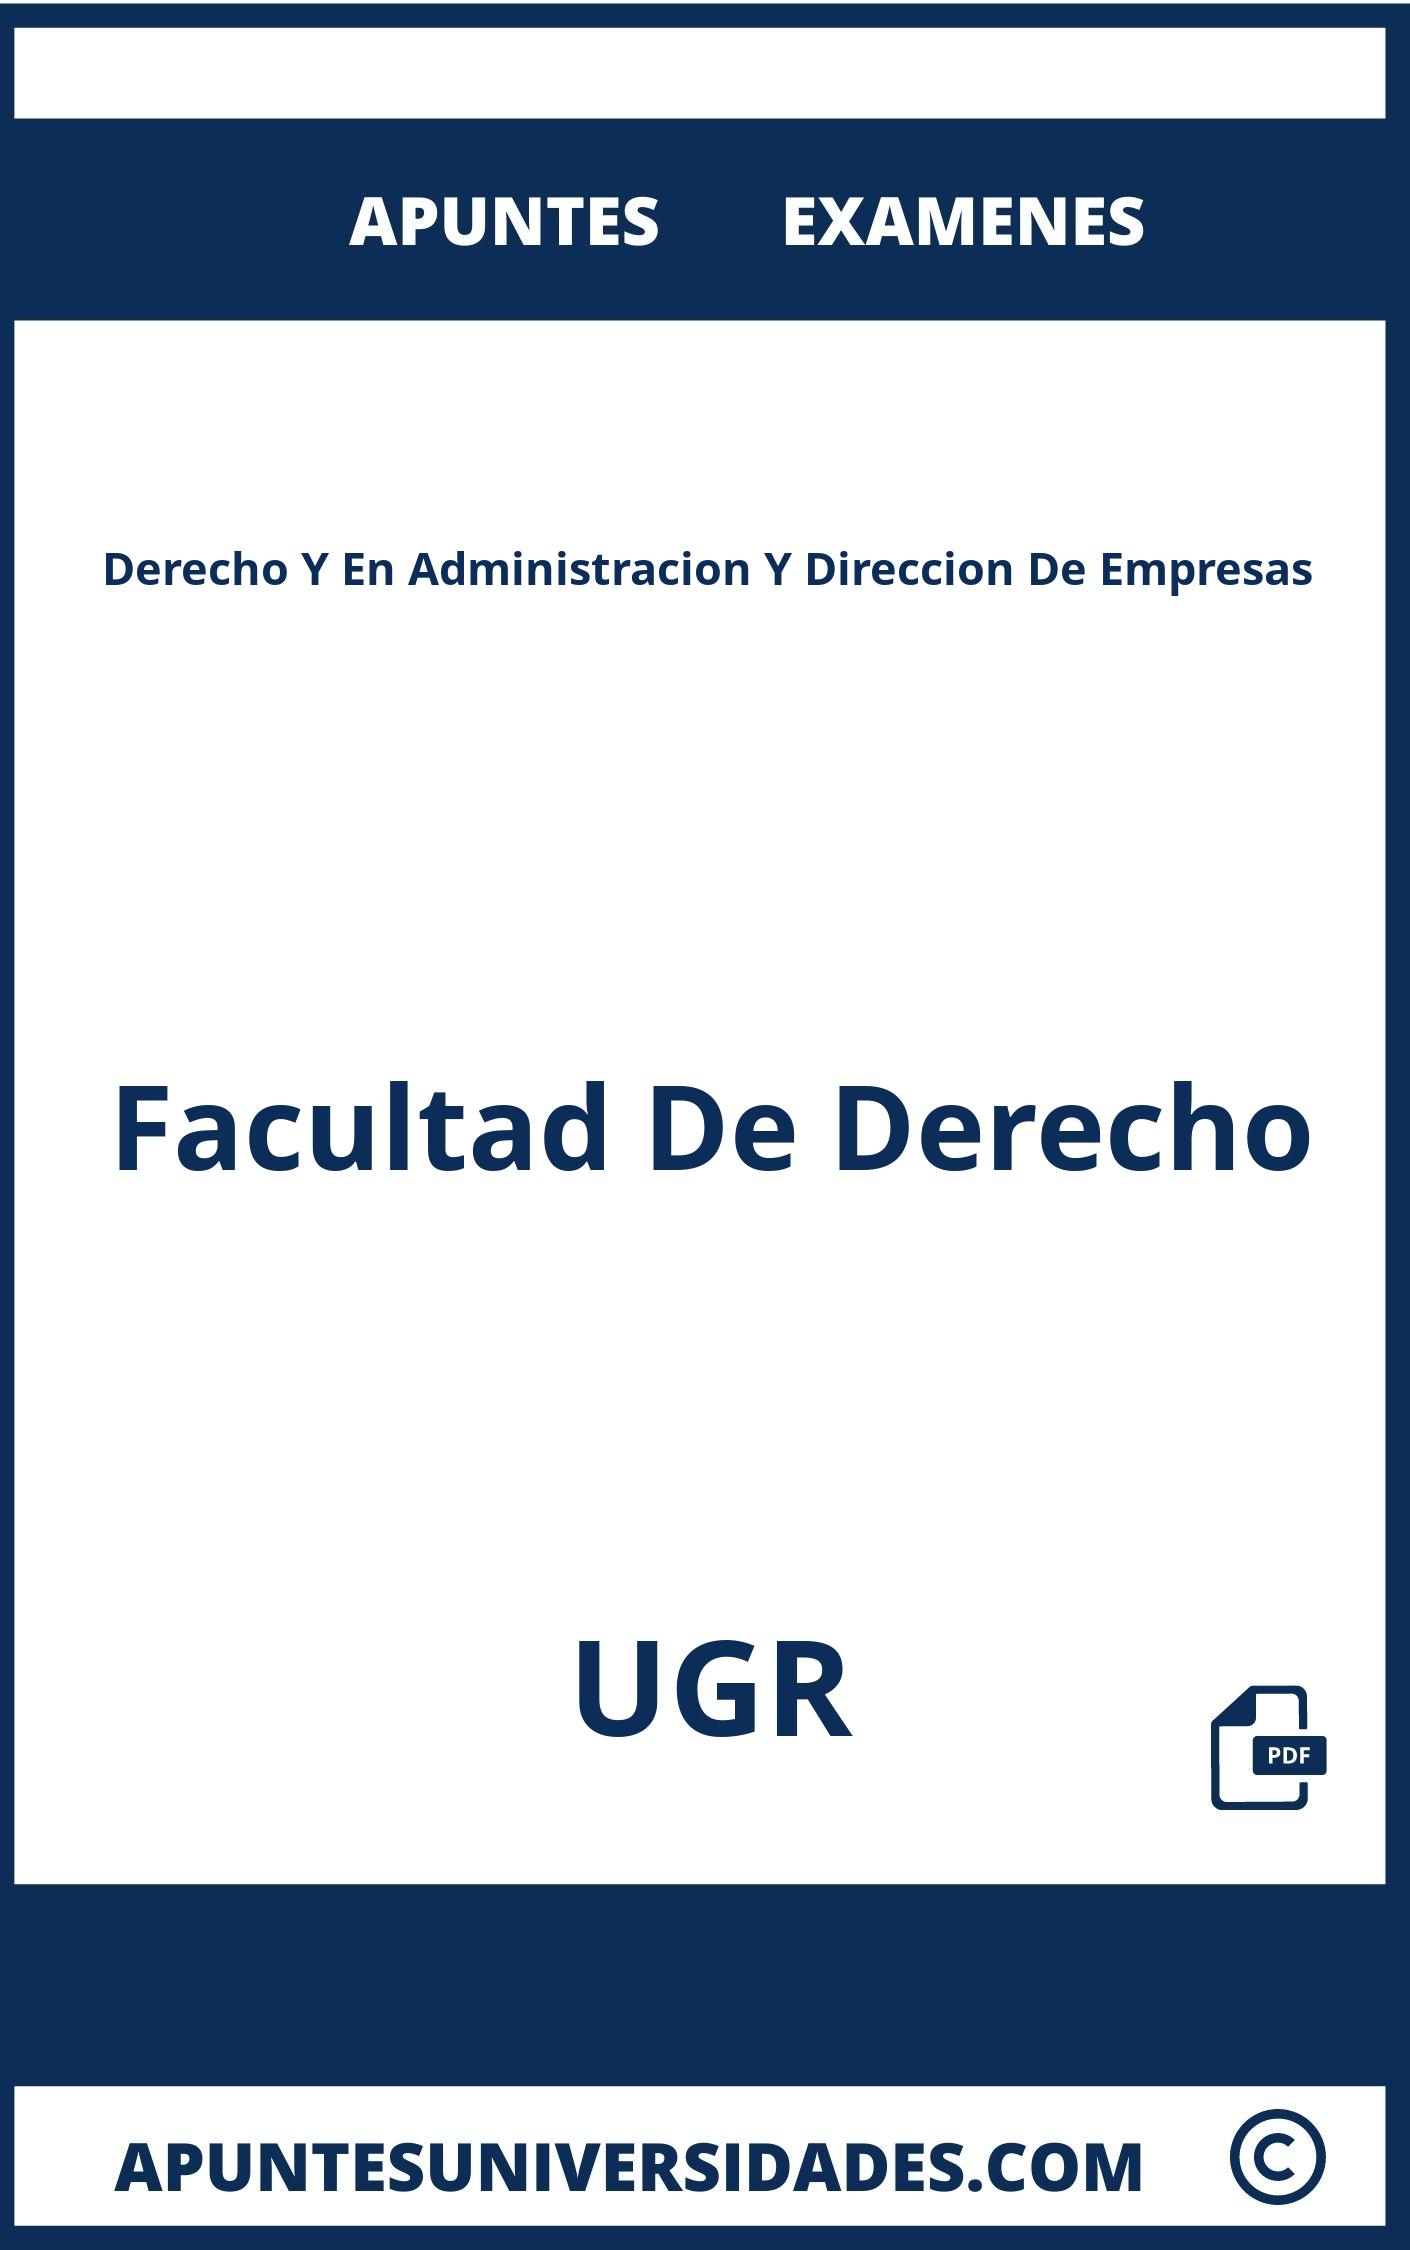 Derecho Y En Administracion Y Direccion De Empresas UGR Examenes Apuntes